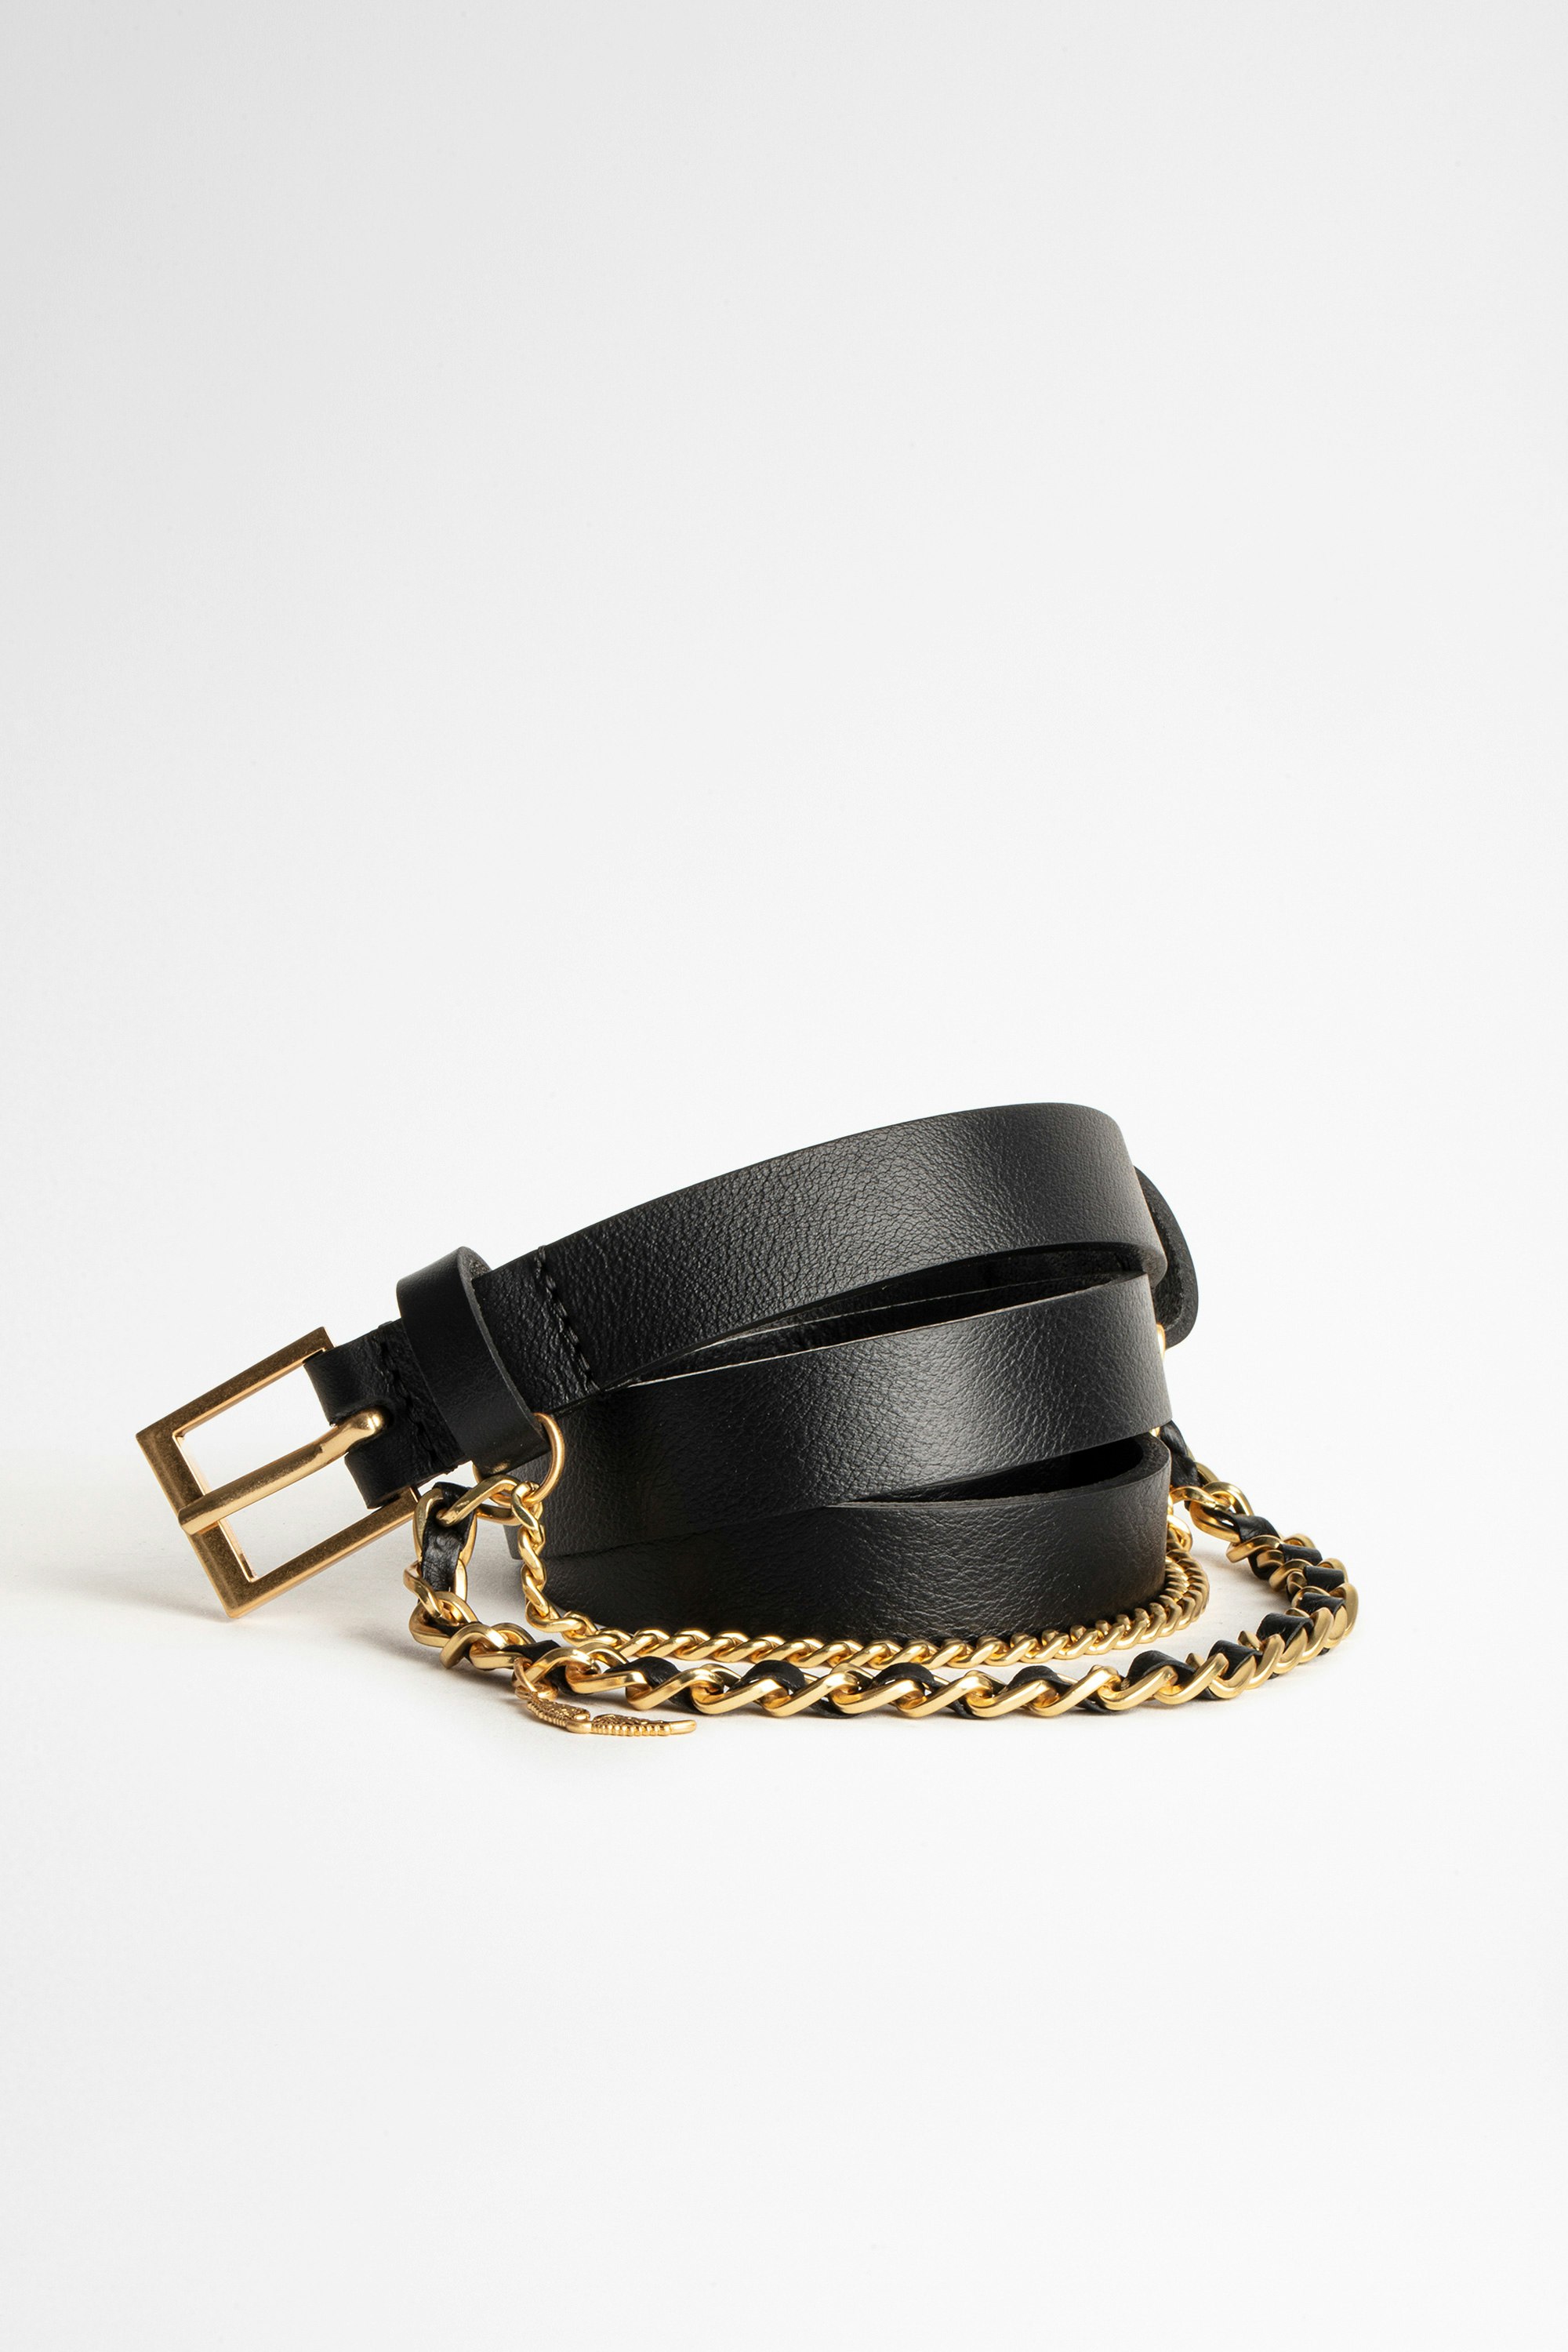 Cinturón Rock Chain Cinturón de piel negra de mujer de Zadig&Voltaire con cadena dorada.